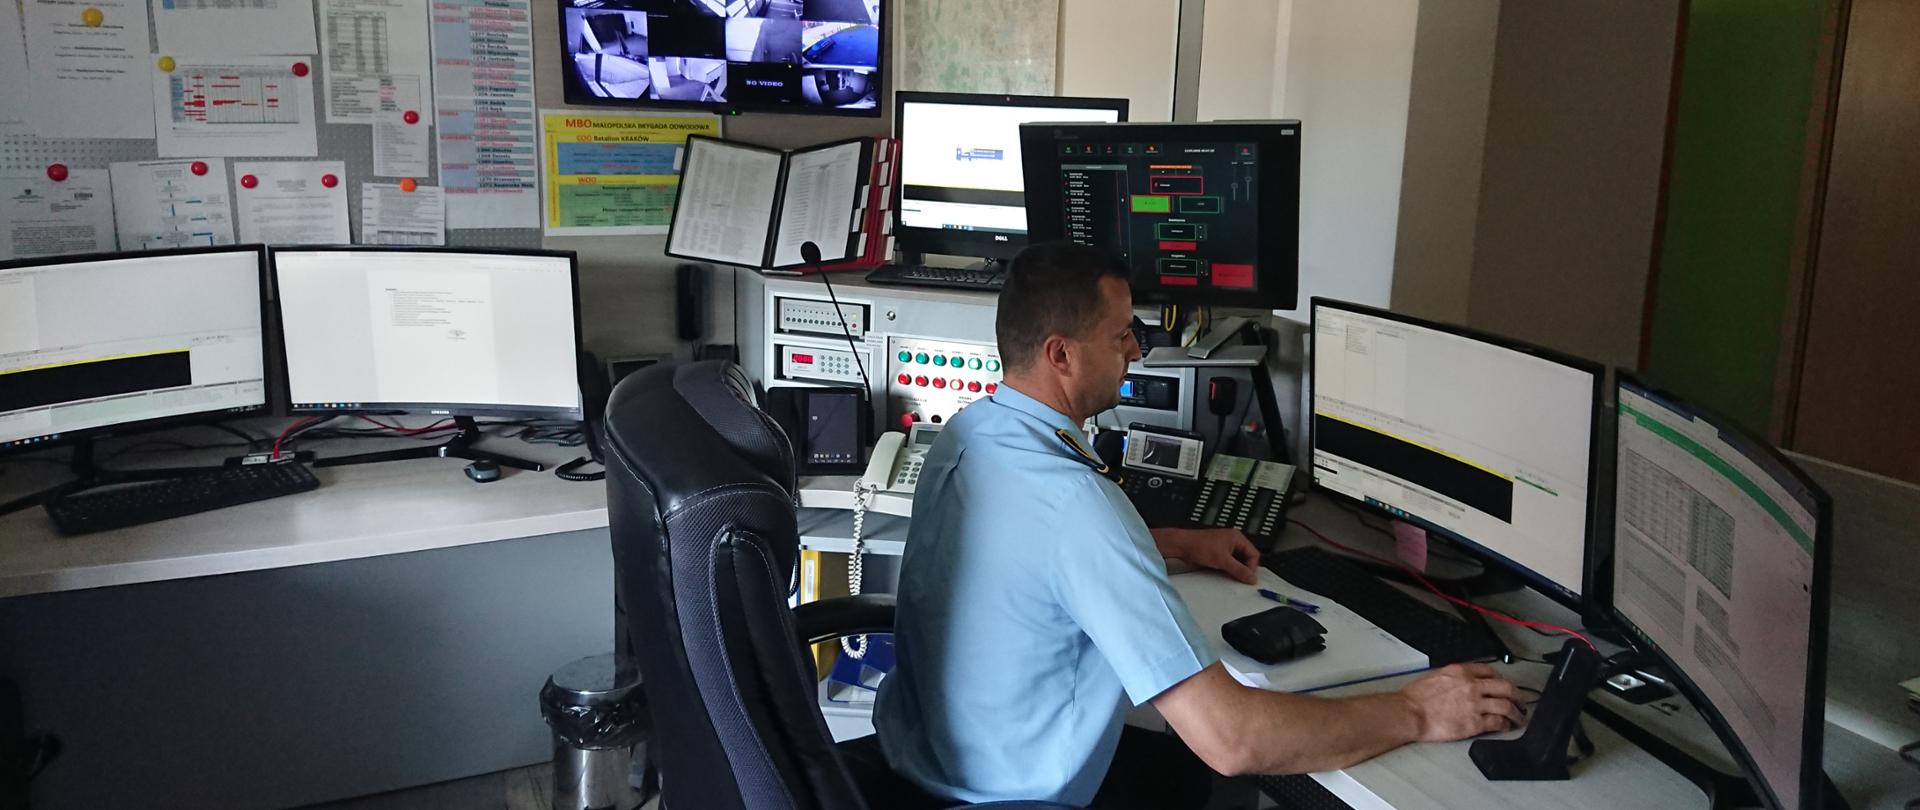 Strażak - Dyżurny Operacyjny Powiatu - za swoim stanowiskiem pracy. Biurko wraz z stajami komputerowymi oraz systemami łączności bezprzewodowej. 